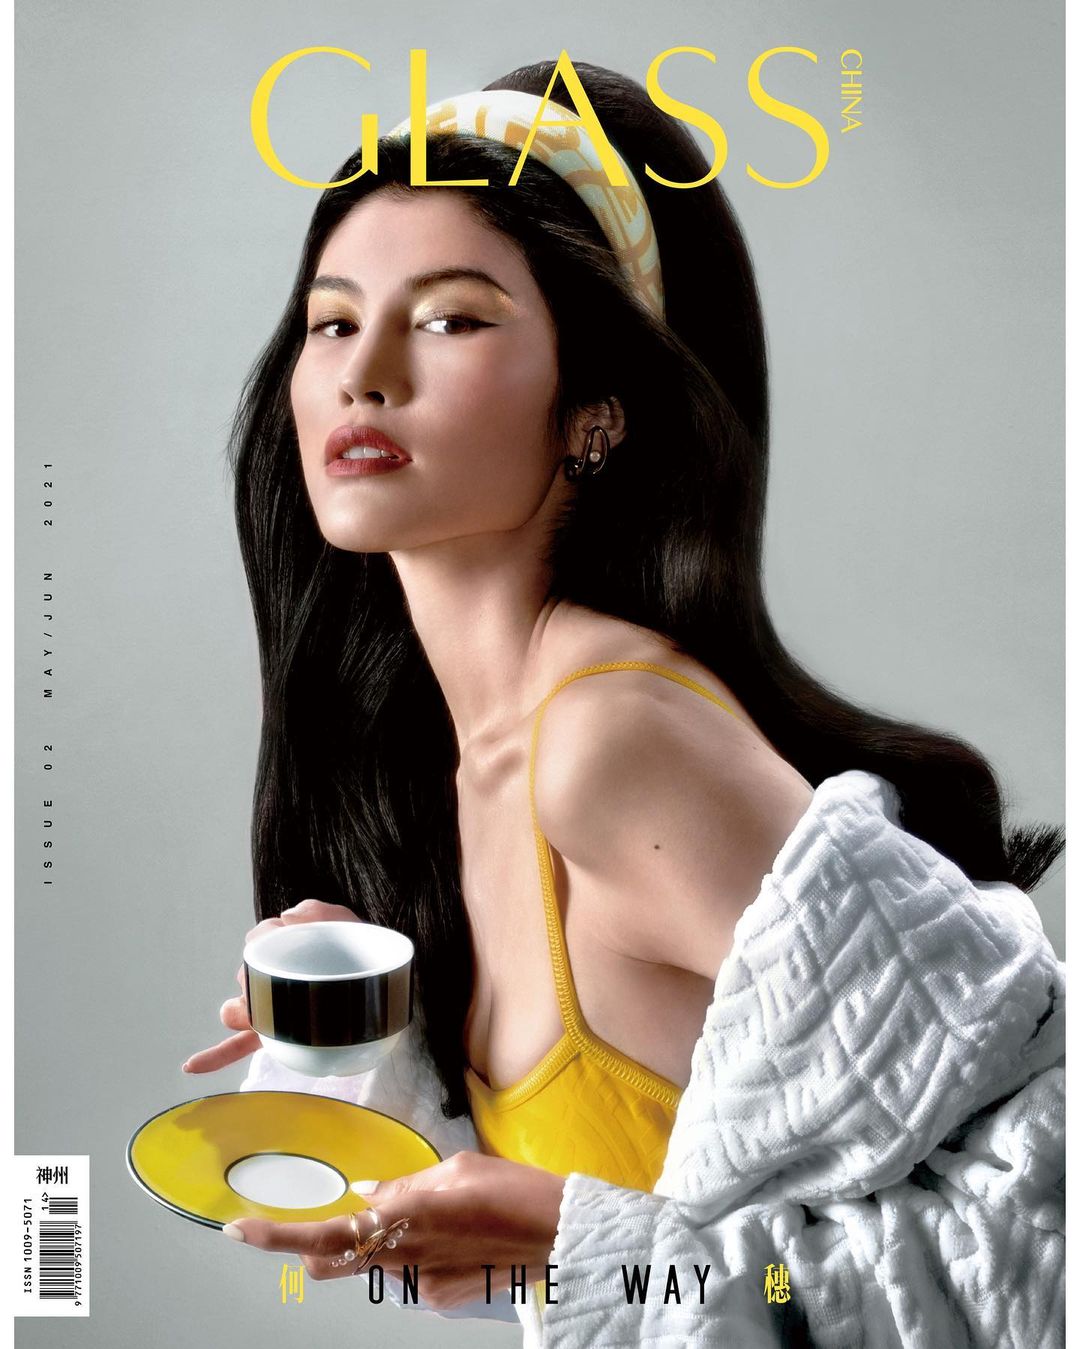 Sui He, gương mặt trang bìa số tháng 6 của tạp chí Glass Trung Quốc.